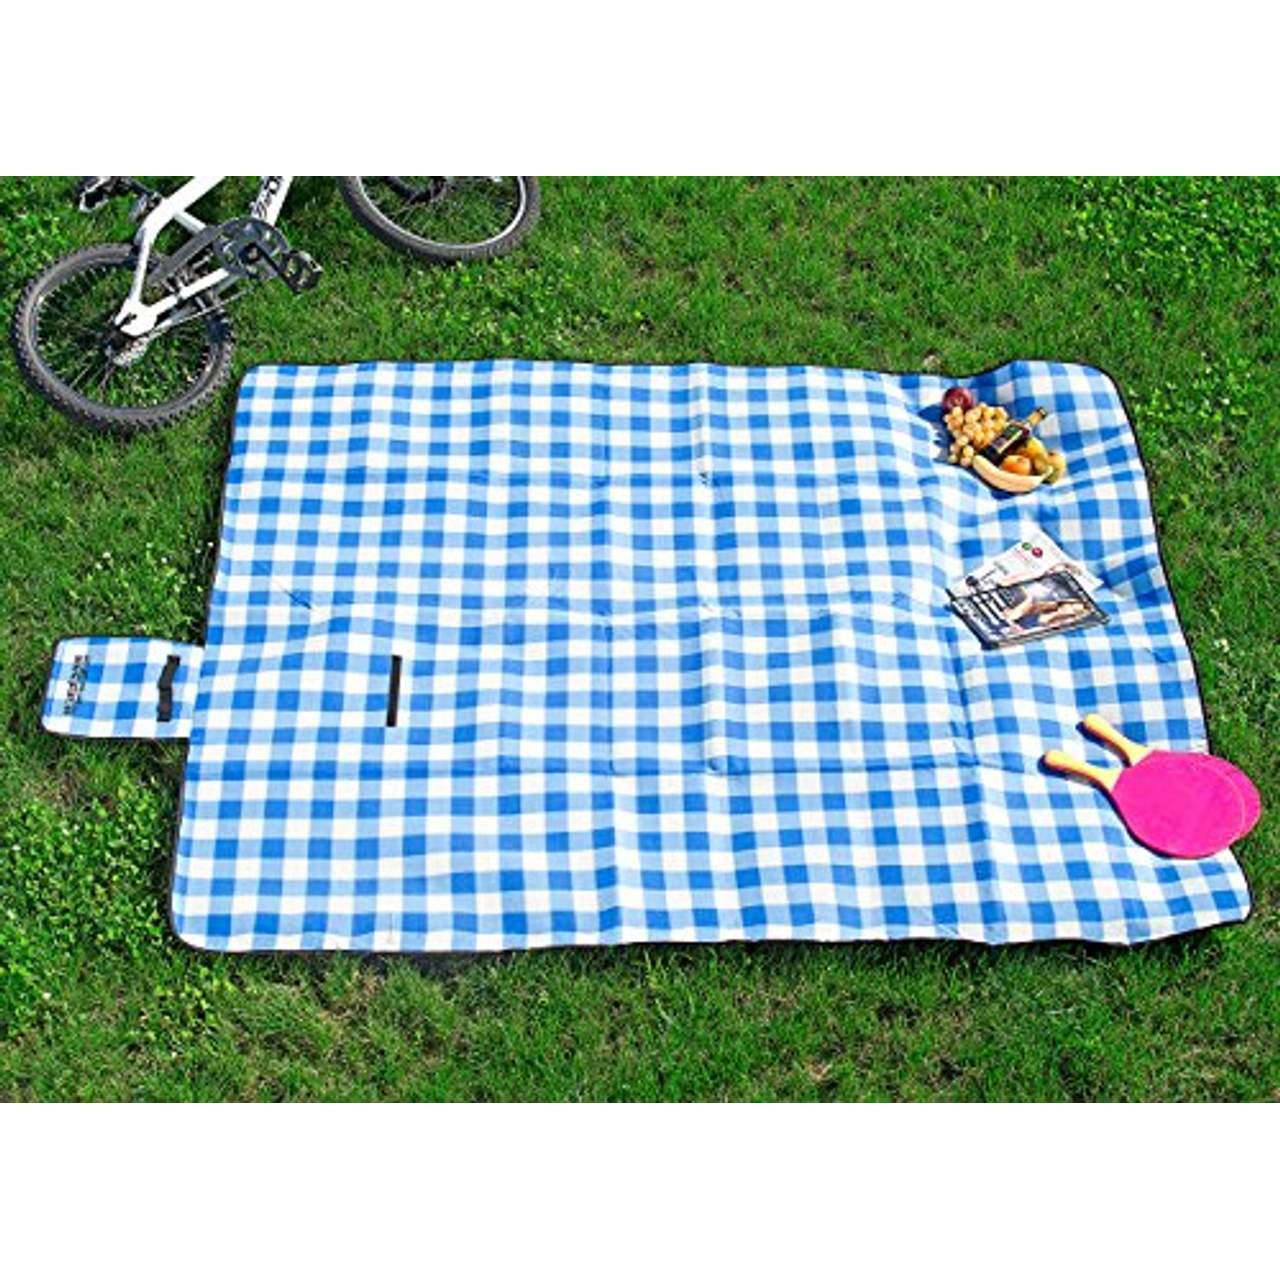 PEARL Picknickdecke: Fleece-Picknick-Decke mit wasserabweisender Unterseite